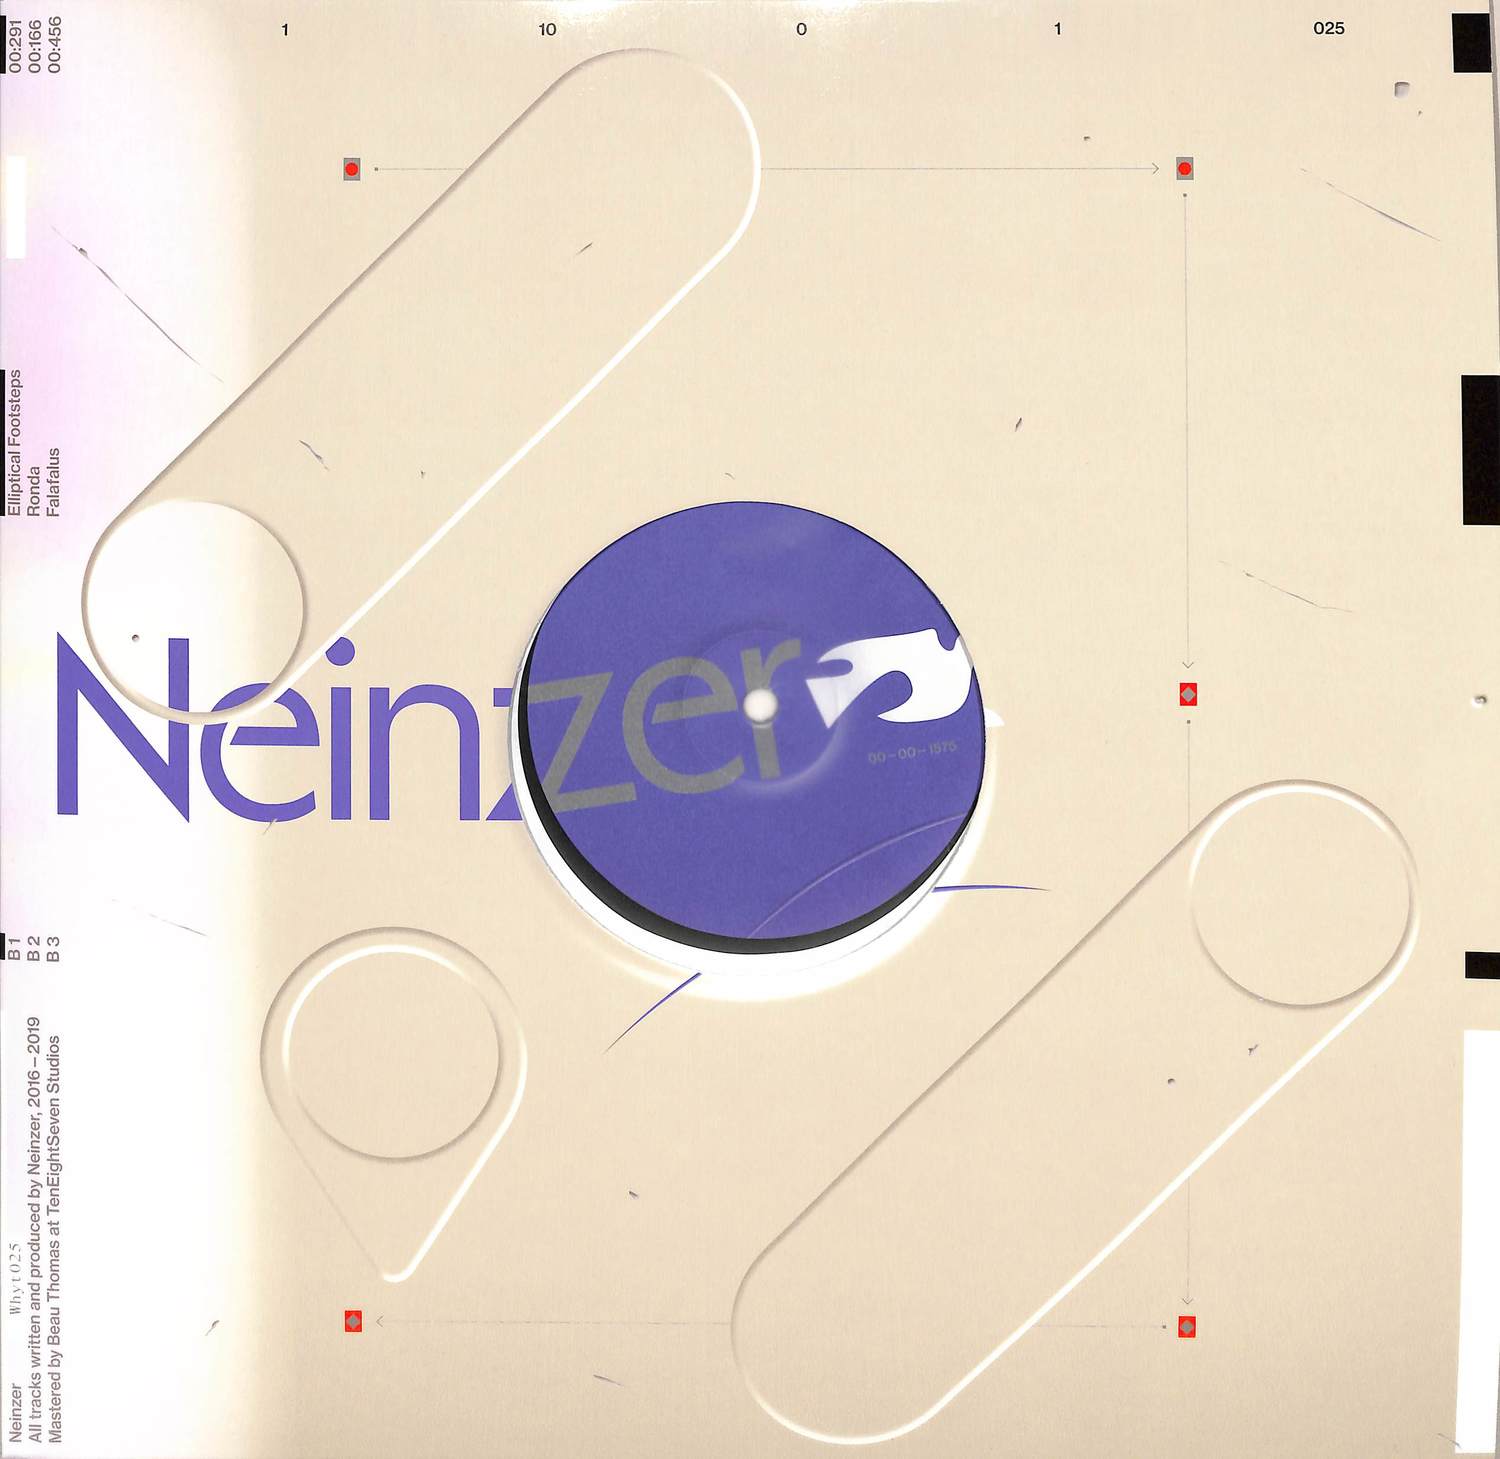 Neinzer - WHITIES 025